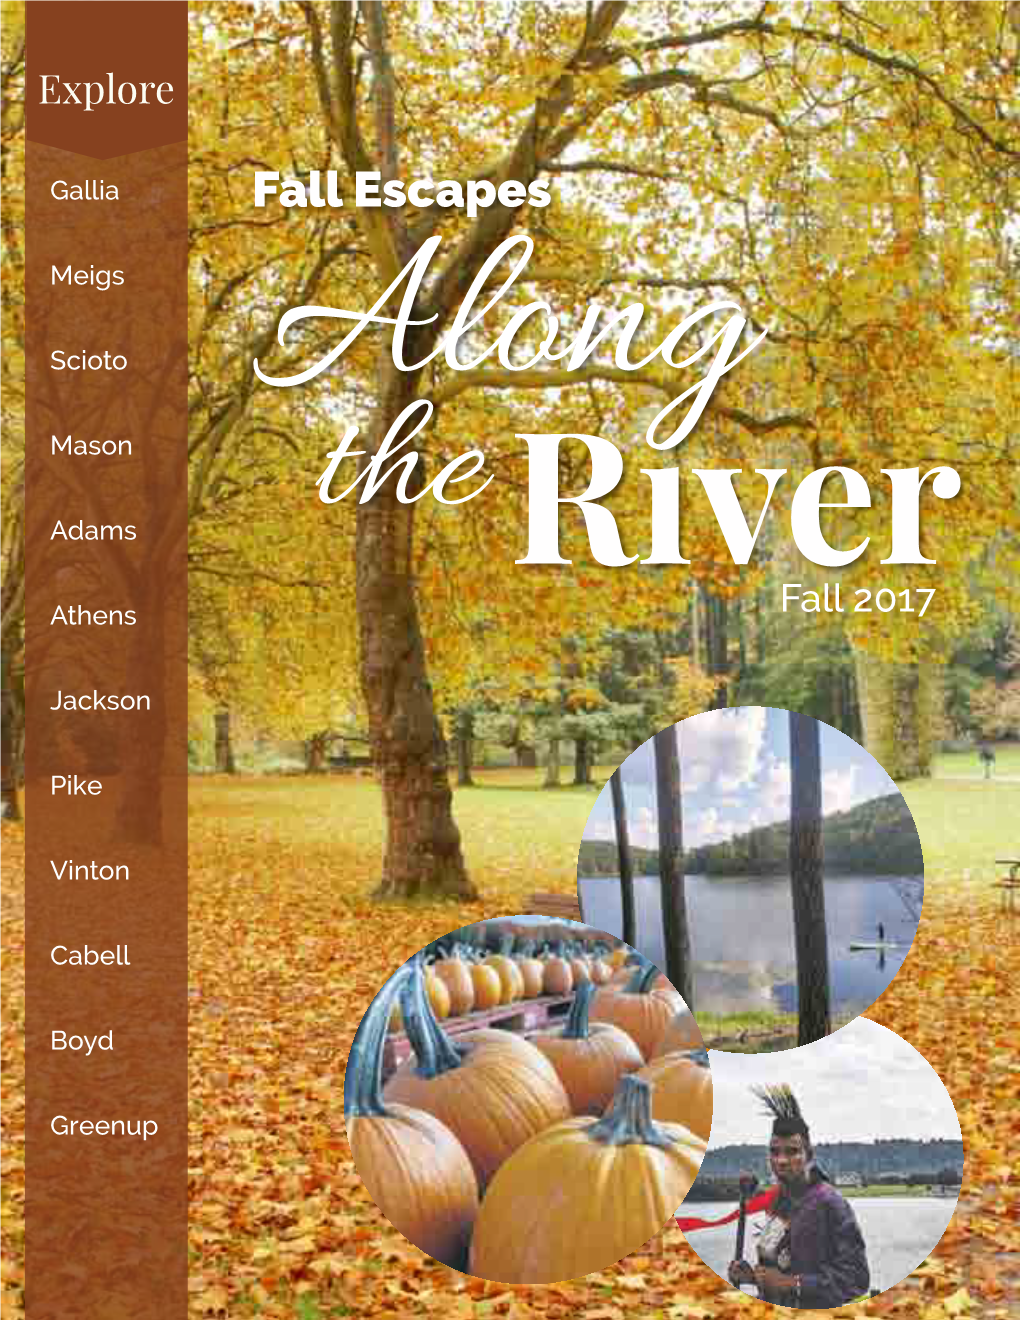 Fall Escapes